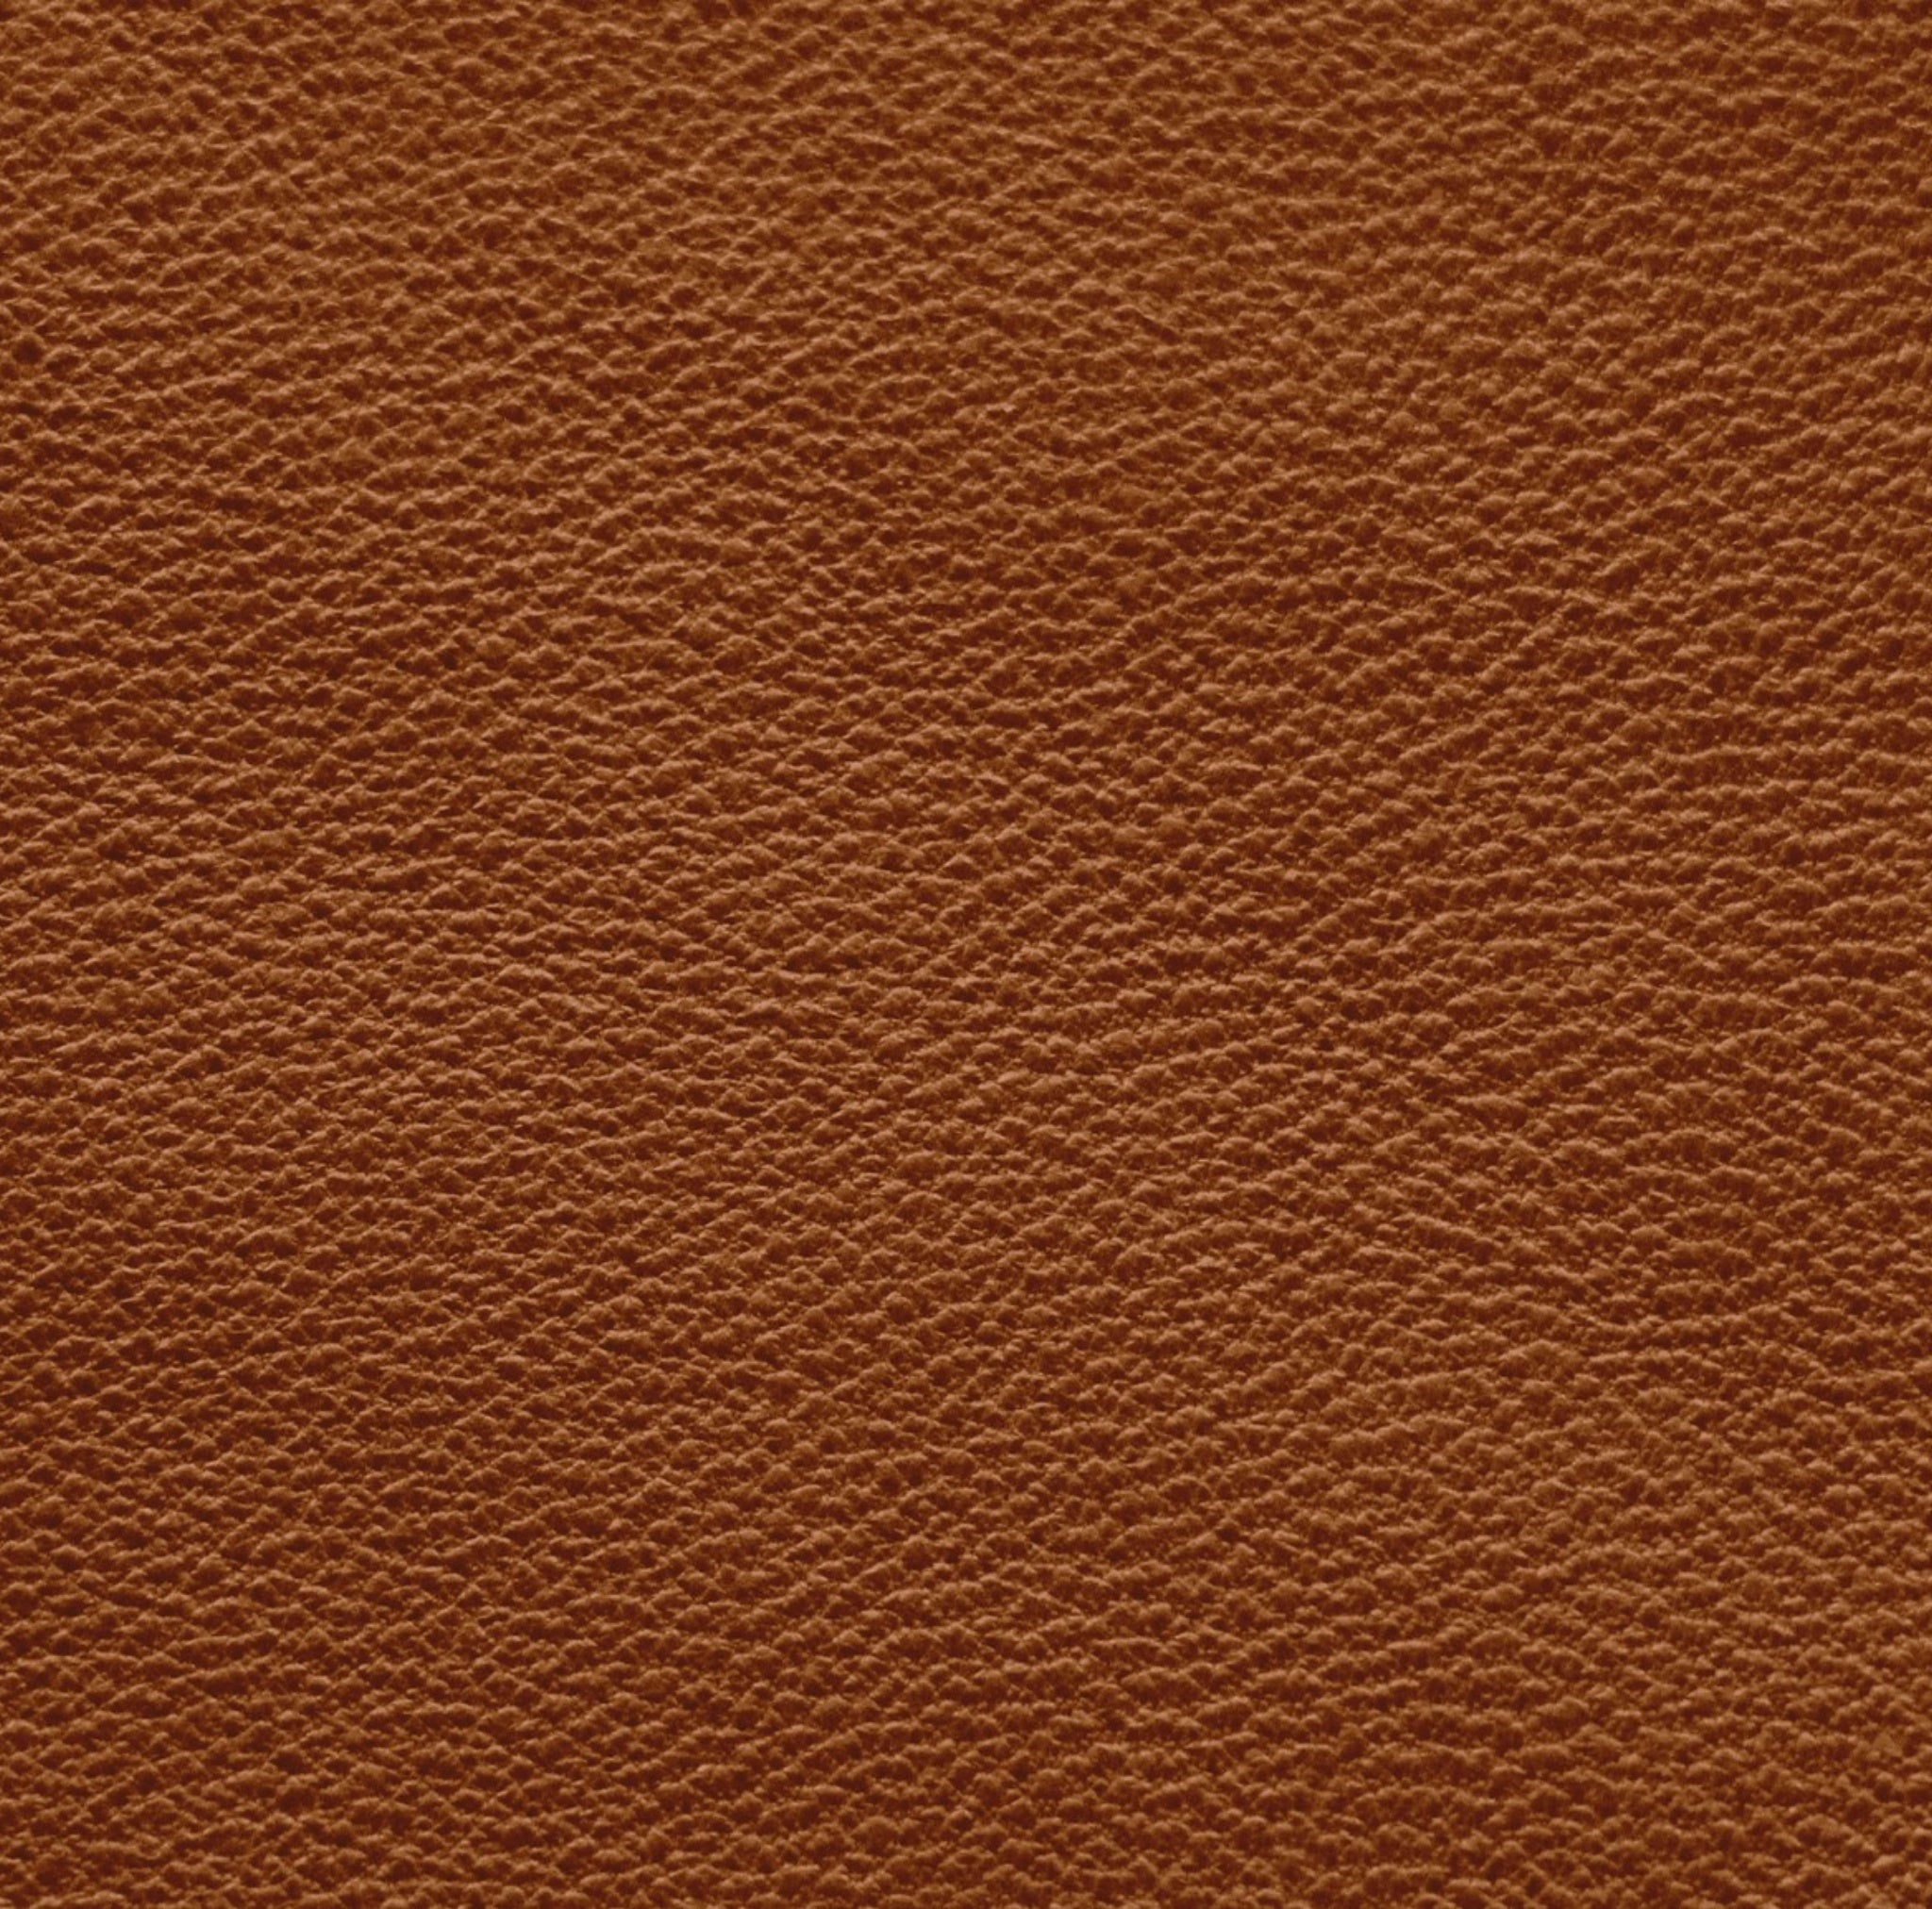 Akai Pro APC 40 Skin Leather